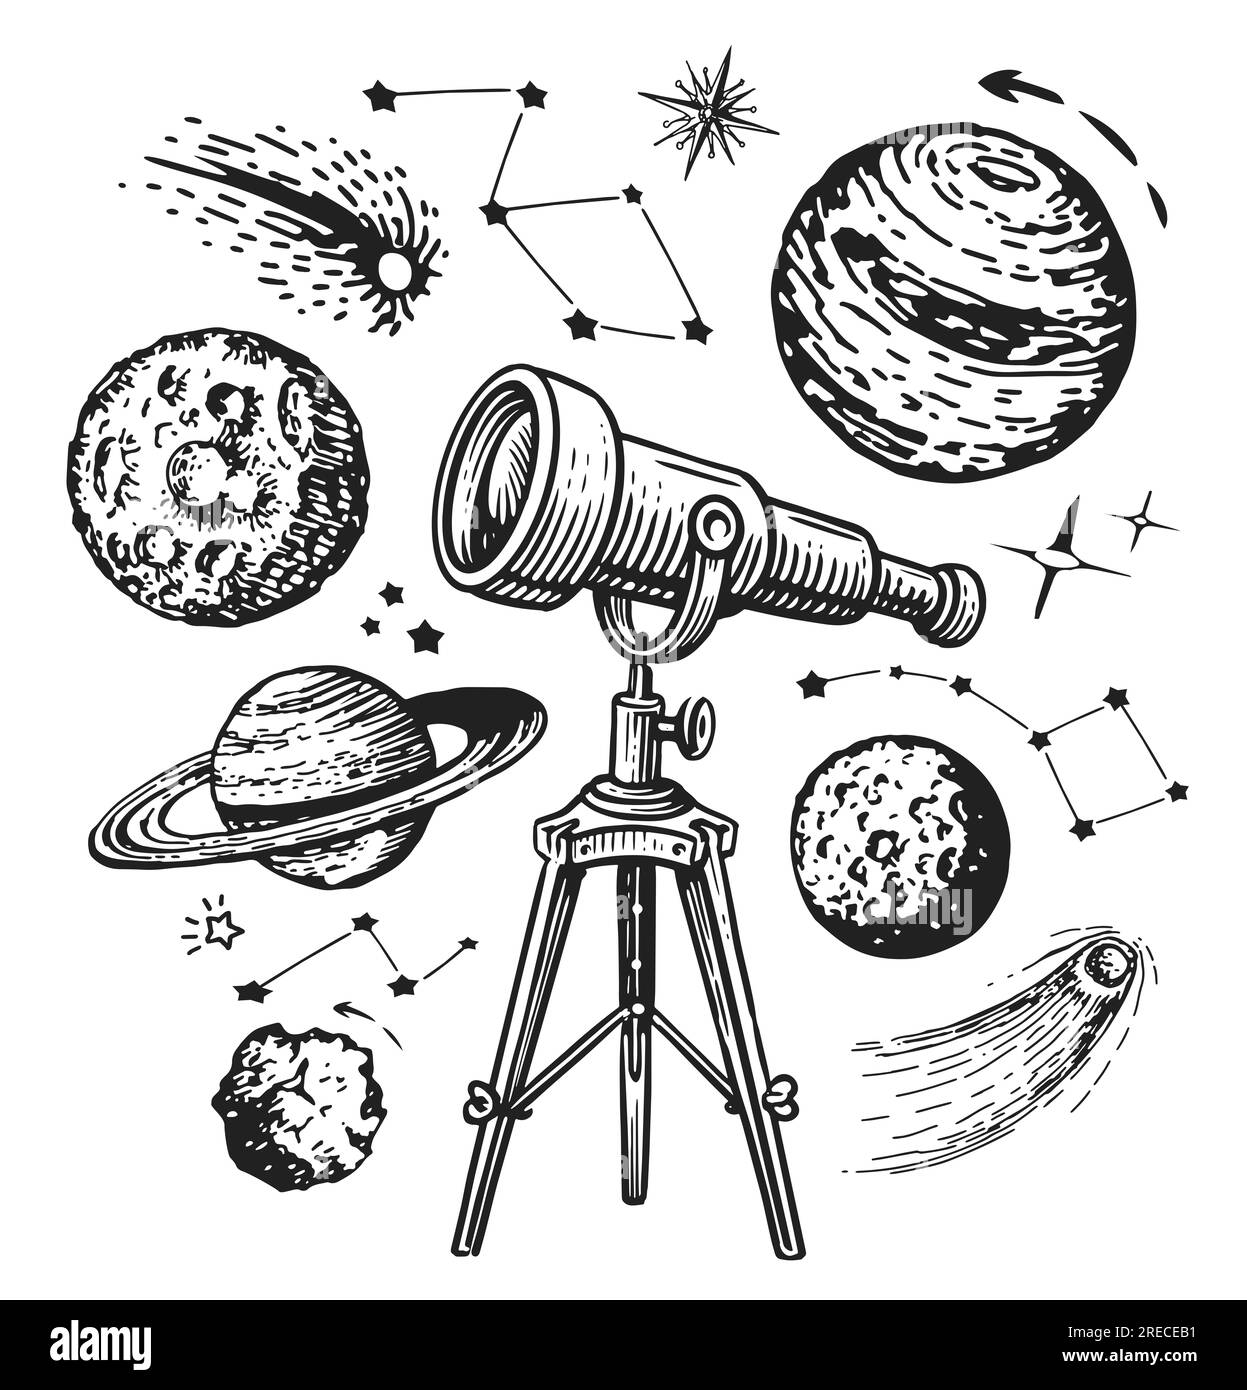 Le télescope rétro regarde les planètes et les étoiles. Galaxy, concept d'espace extra-atmosphérique. Dessin dessiné à la main illustration vintage Banque D'Images